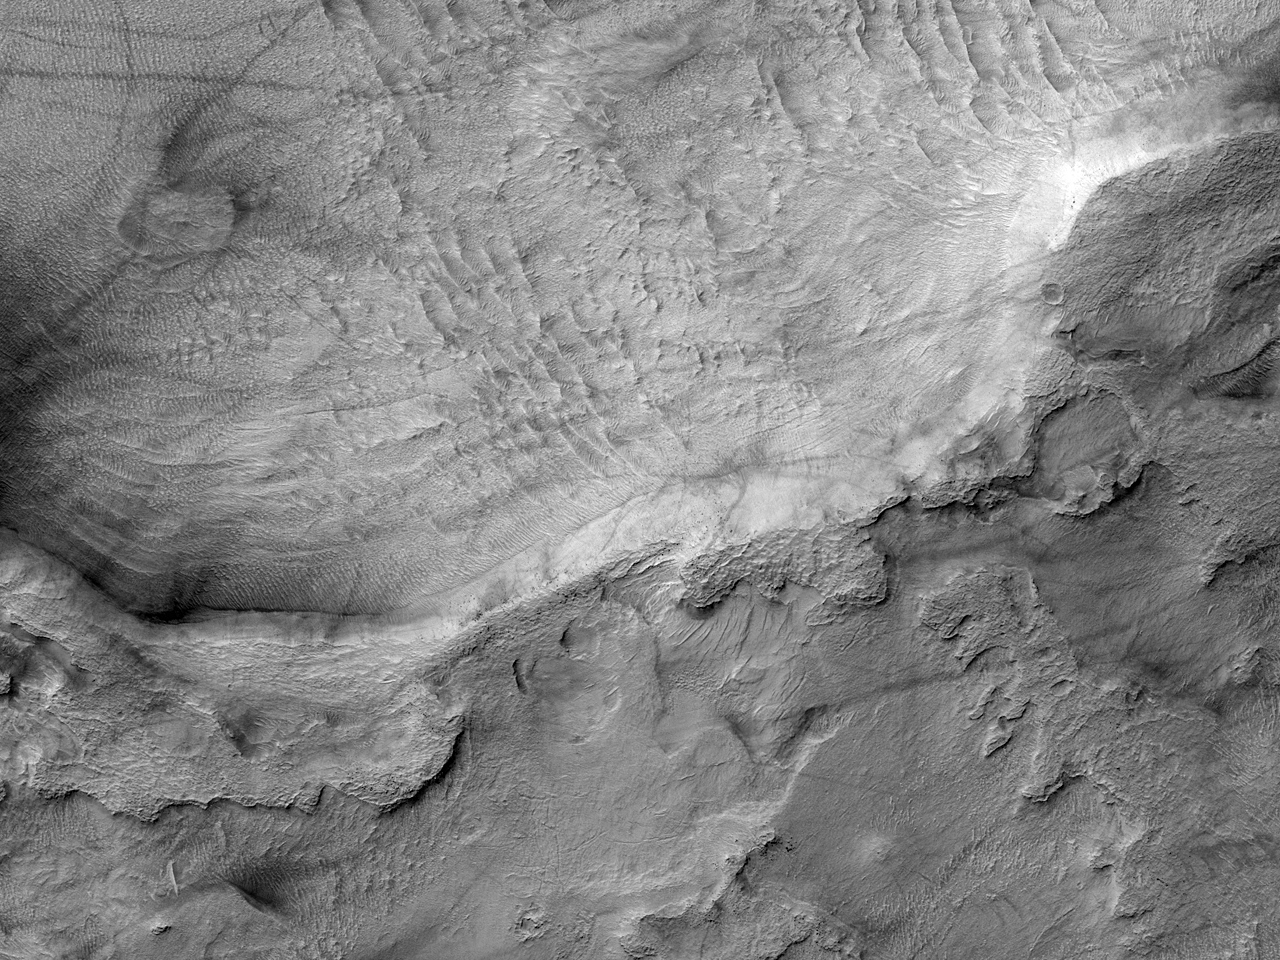 Cratera de impacto no solo de Hellas Planitia